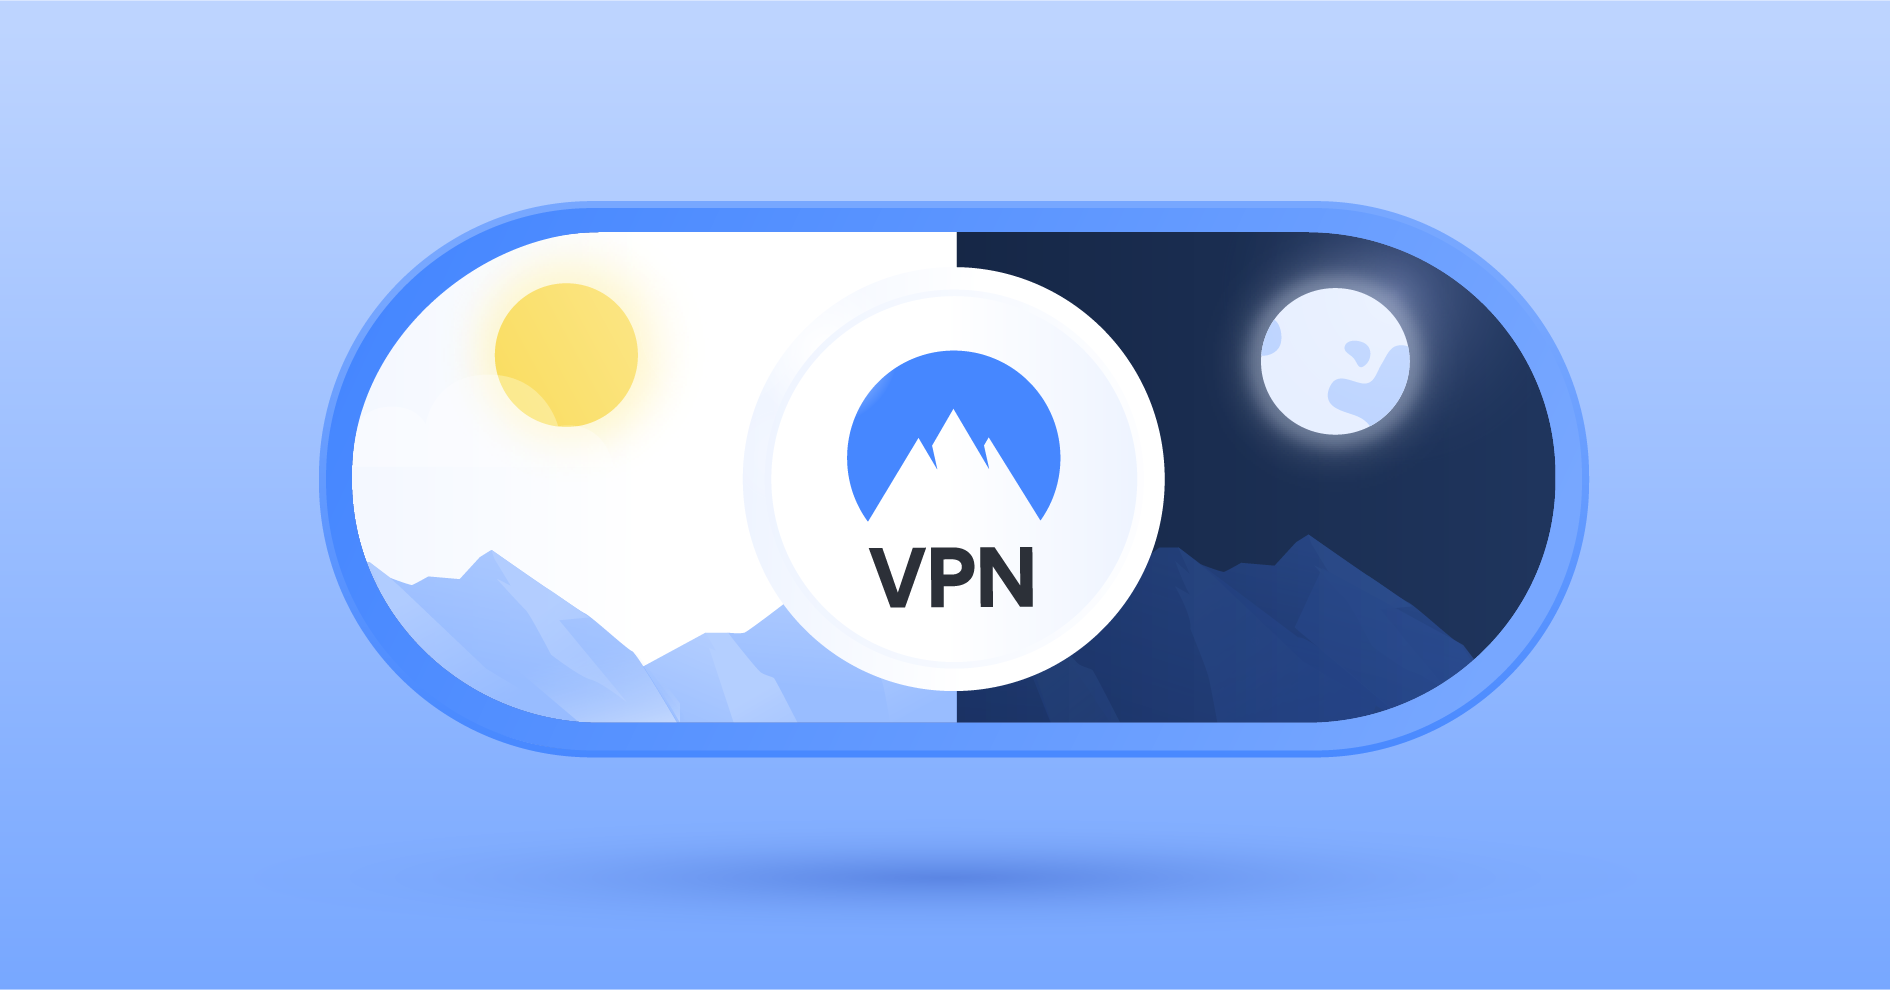 ควรเปิดการใช้งาน VPN ตลอดเวลาหรือไม่?